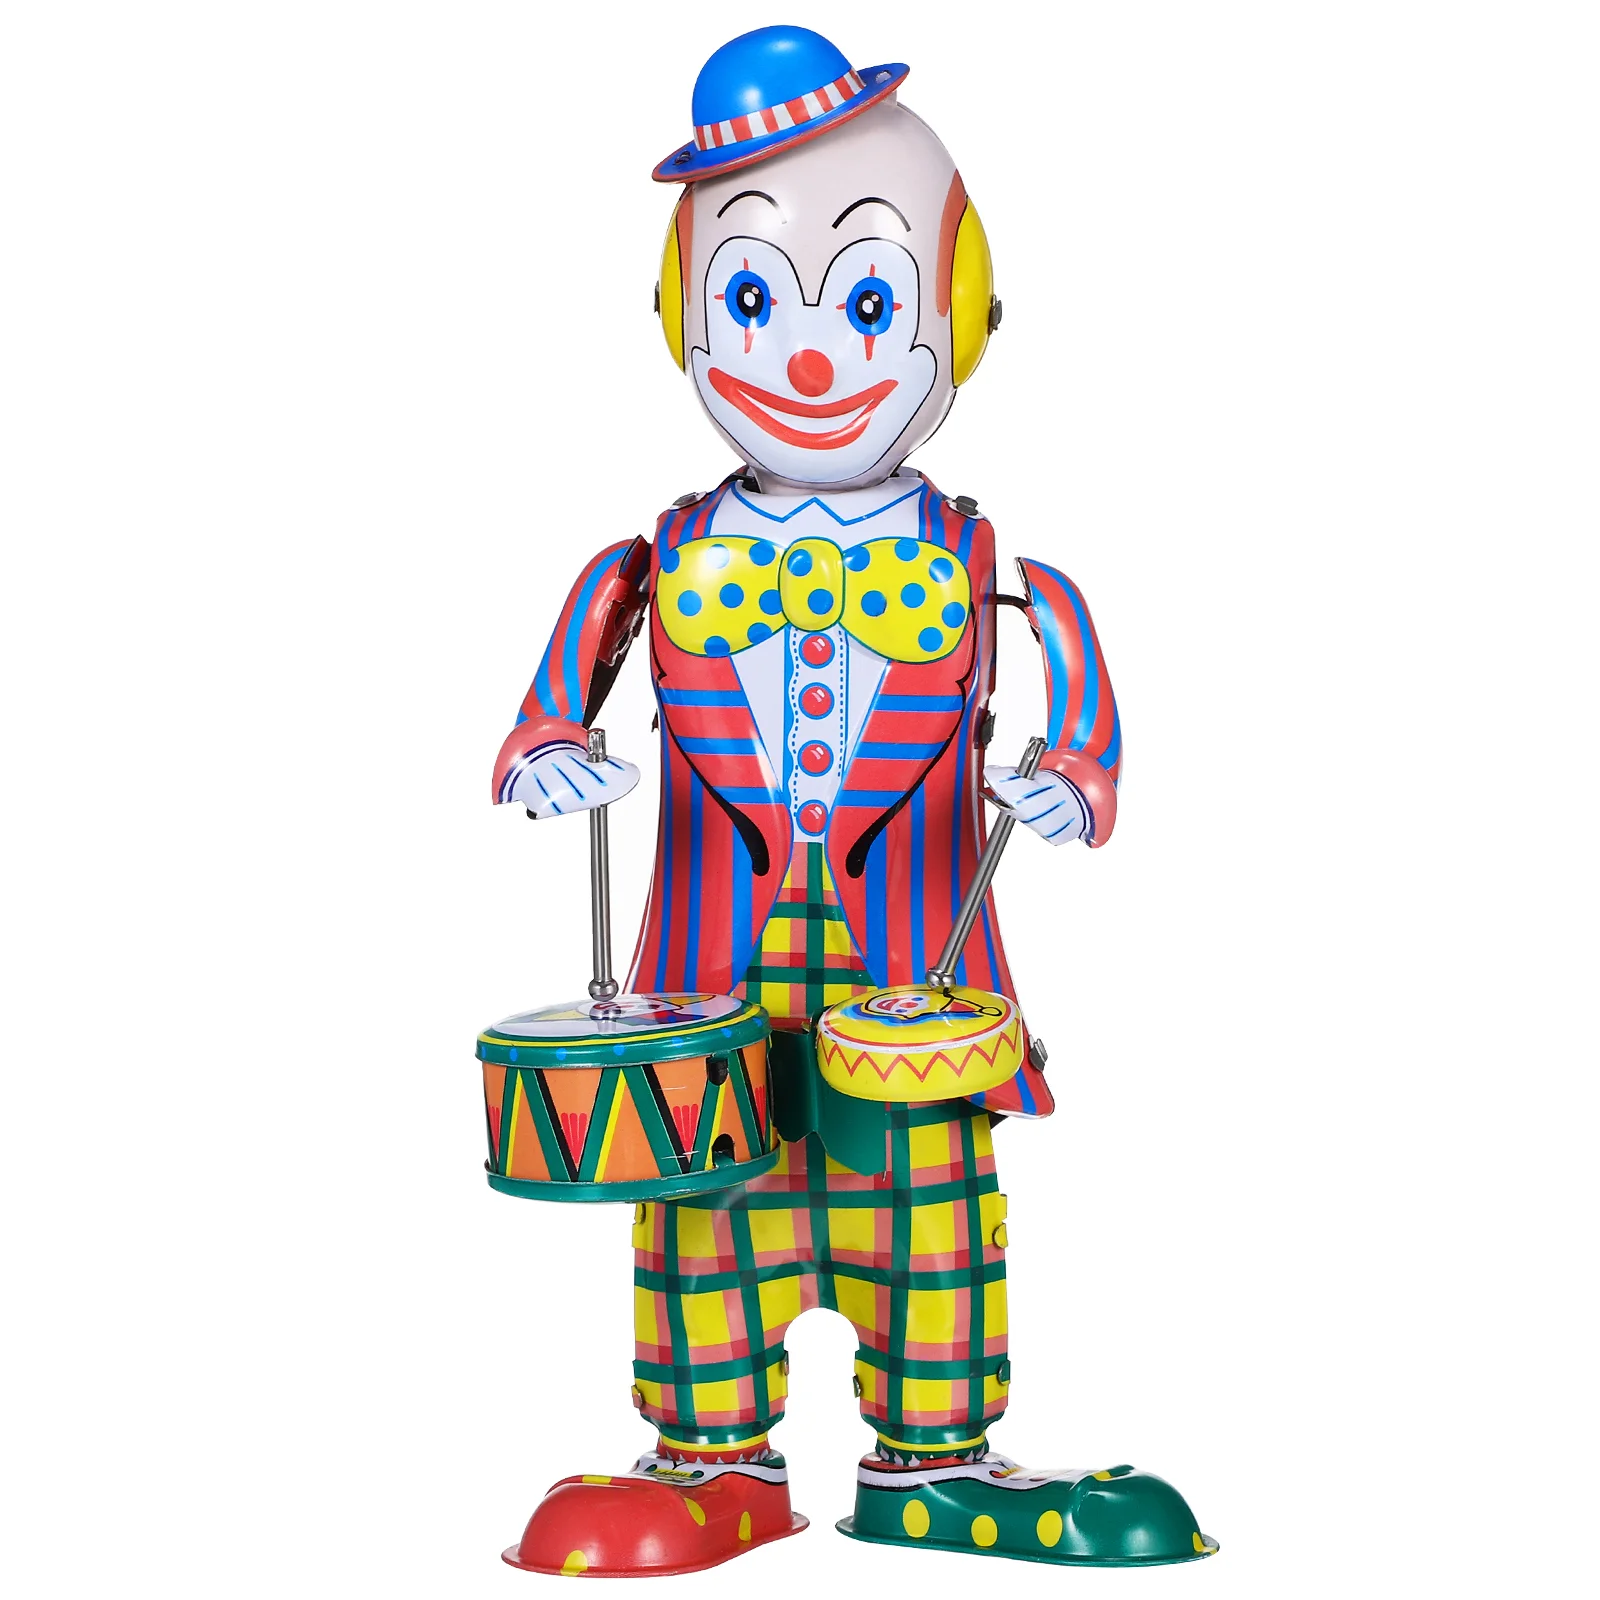 

Clown Ornament Clockwork Toys Wobble Retro Decor Party Favor Small Wind Kids Drummer Vintage